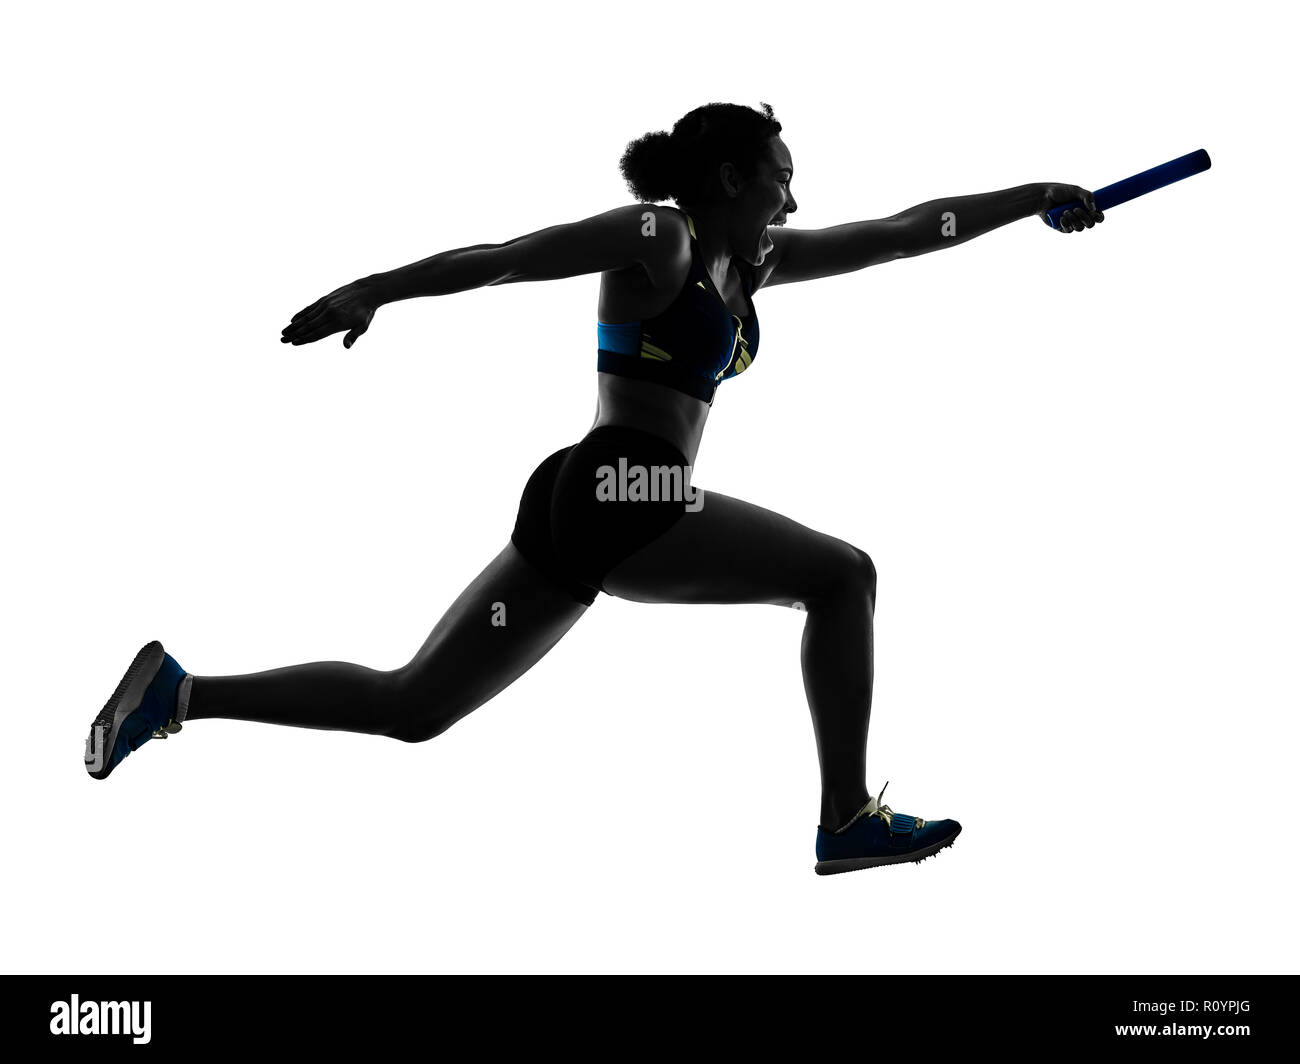 Athletik zielläufer Sprinter laufen Läufer in Silhouette auf weißem Hintergrund Stockfoto